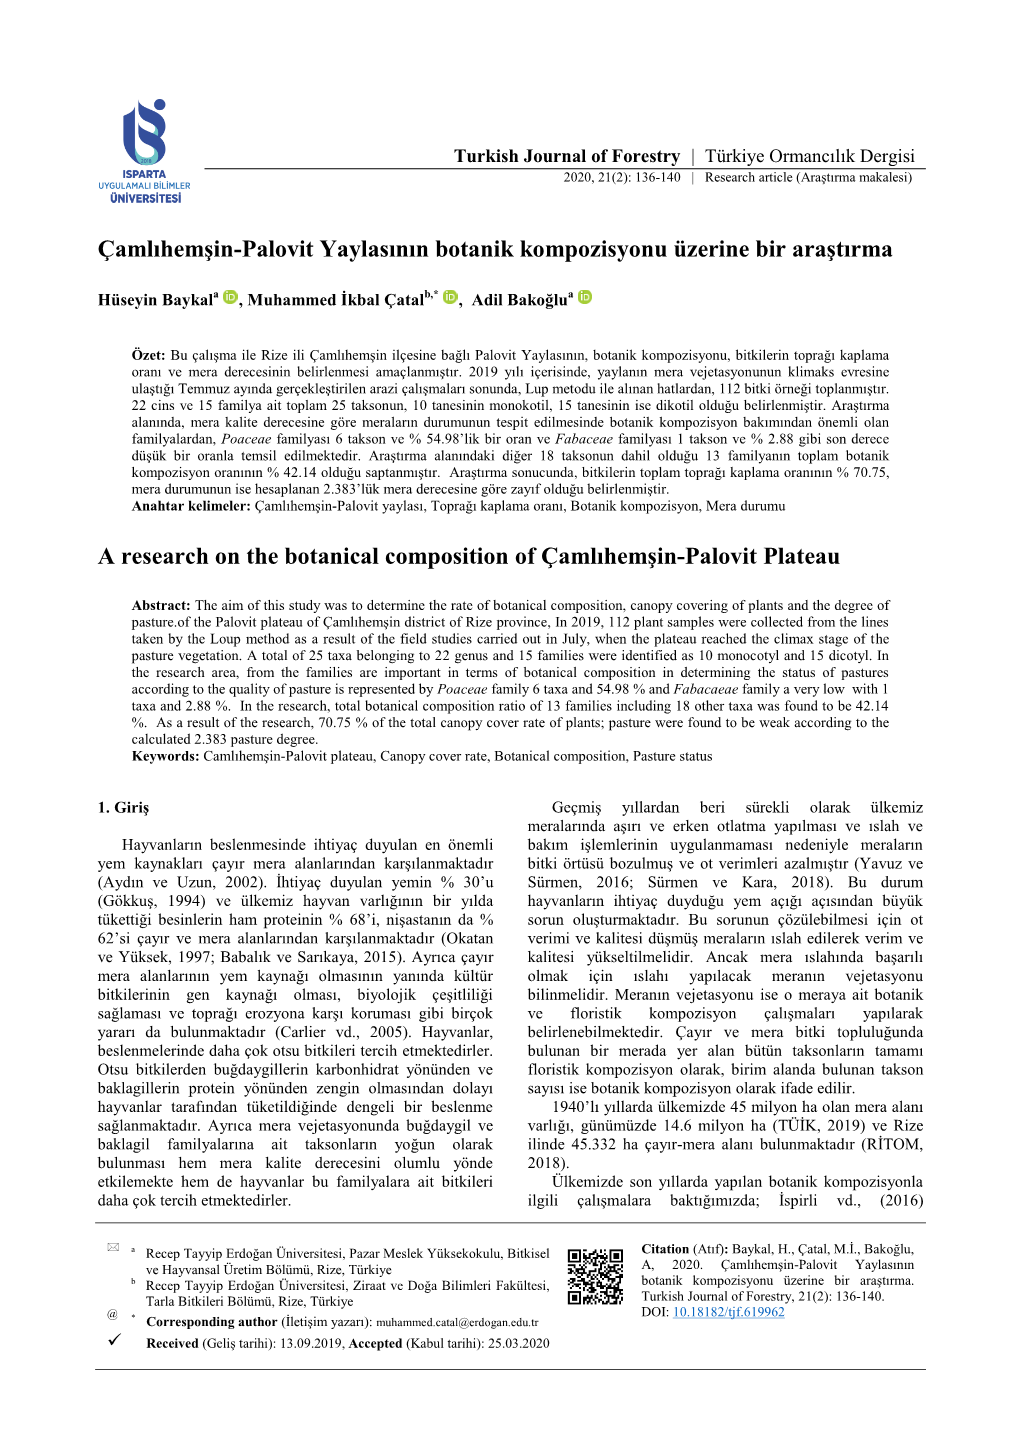 A Research on the Botanical Composition of Çamlıhemşin-Palovit Plateau